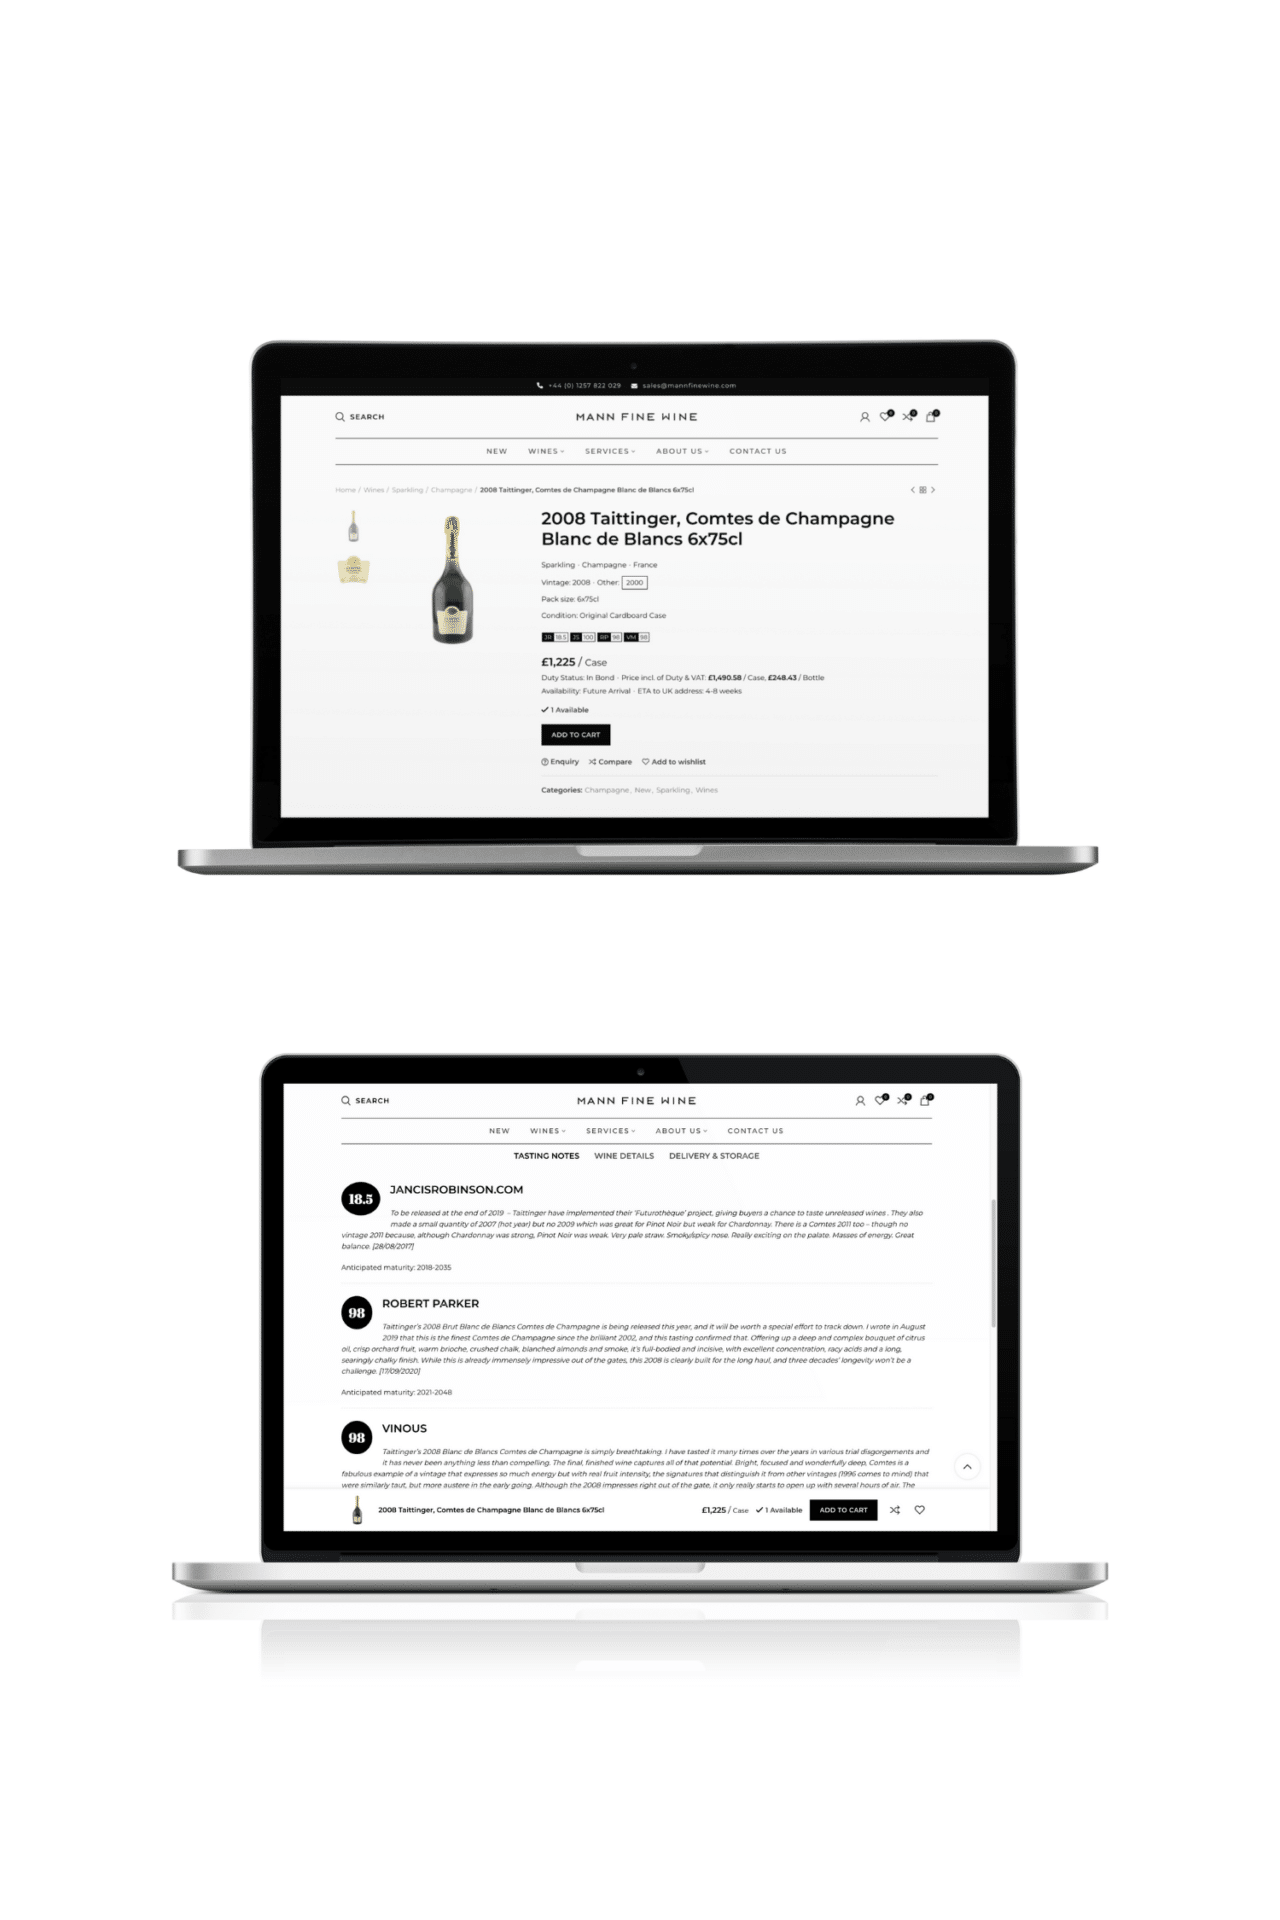 Wine ecommerce - rich content page with bottle shots, critics scores, duty status, etc.